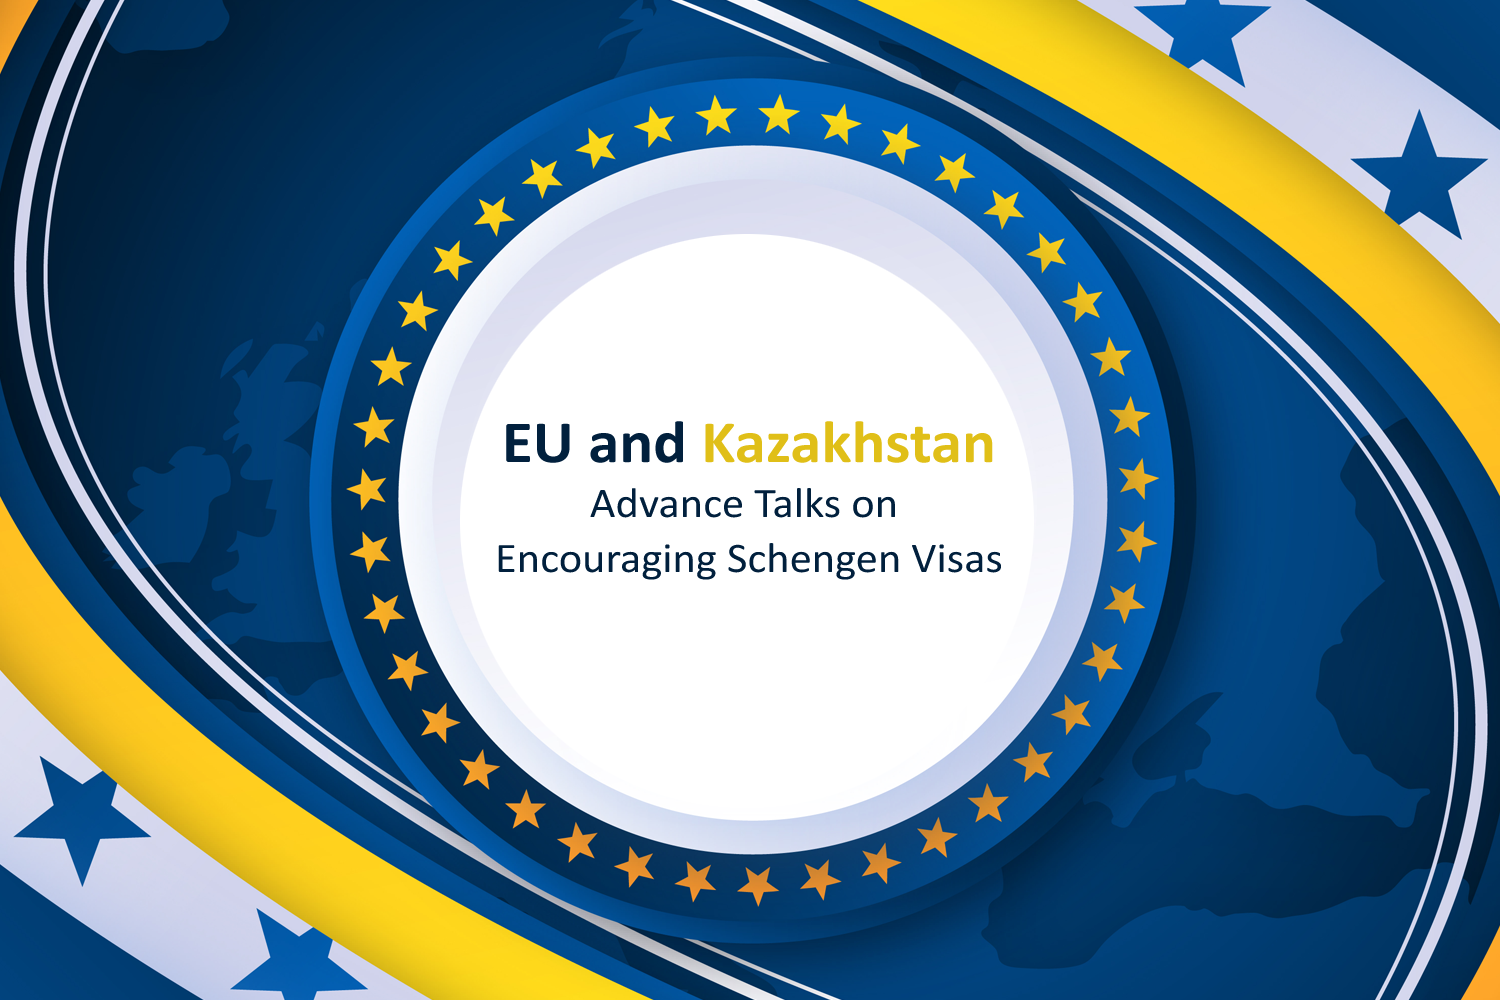 EU and Kazakhstan Advance Talks on Encouraging Schengen Visas.